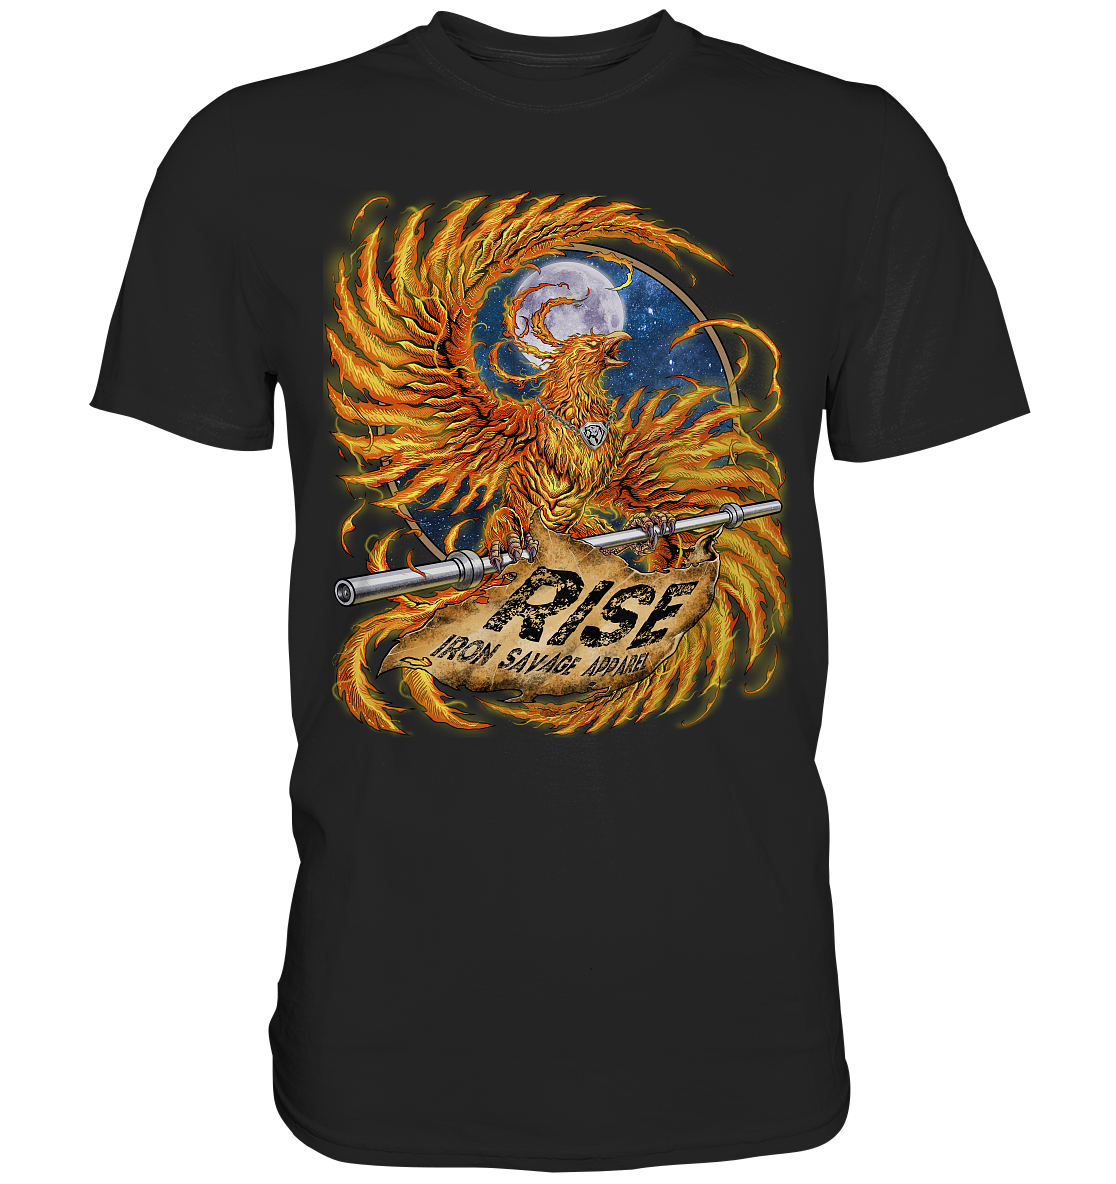 Phoenix: Rise T-shirt (EU)